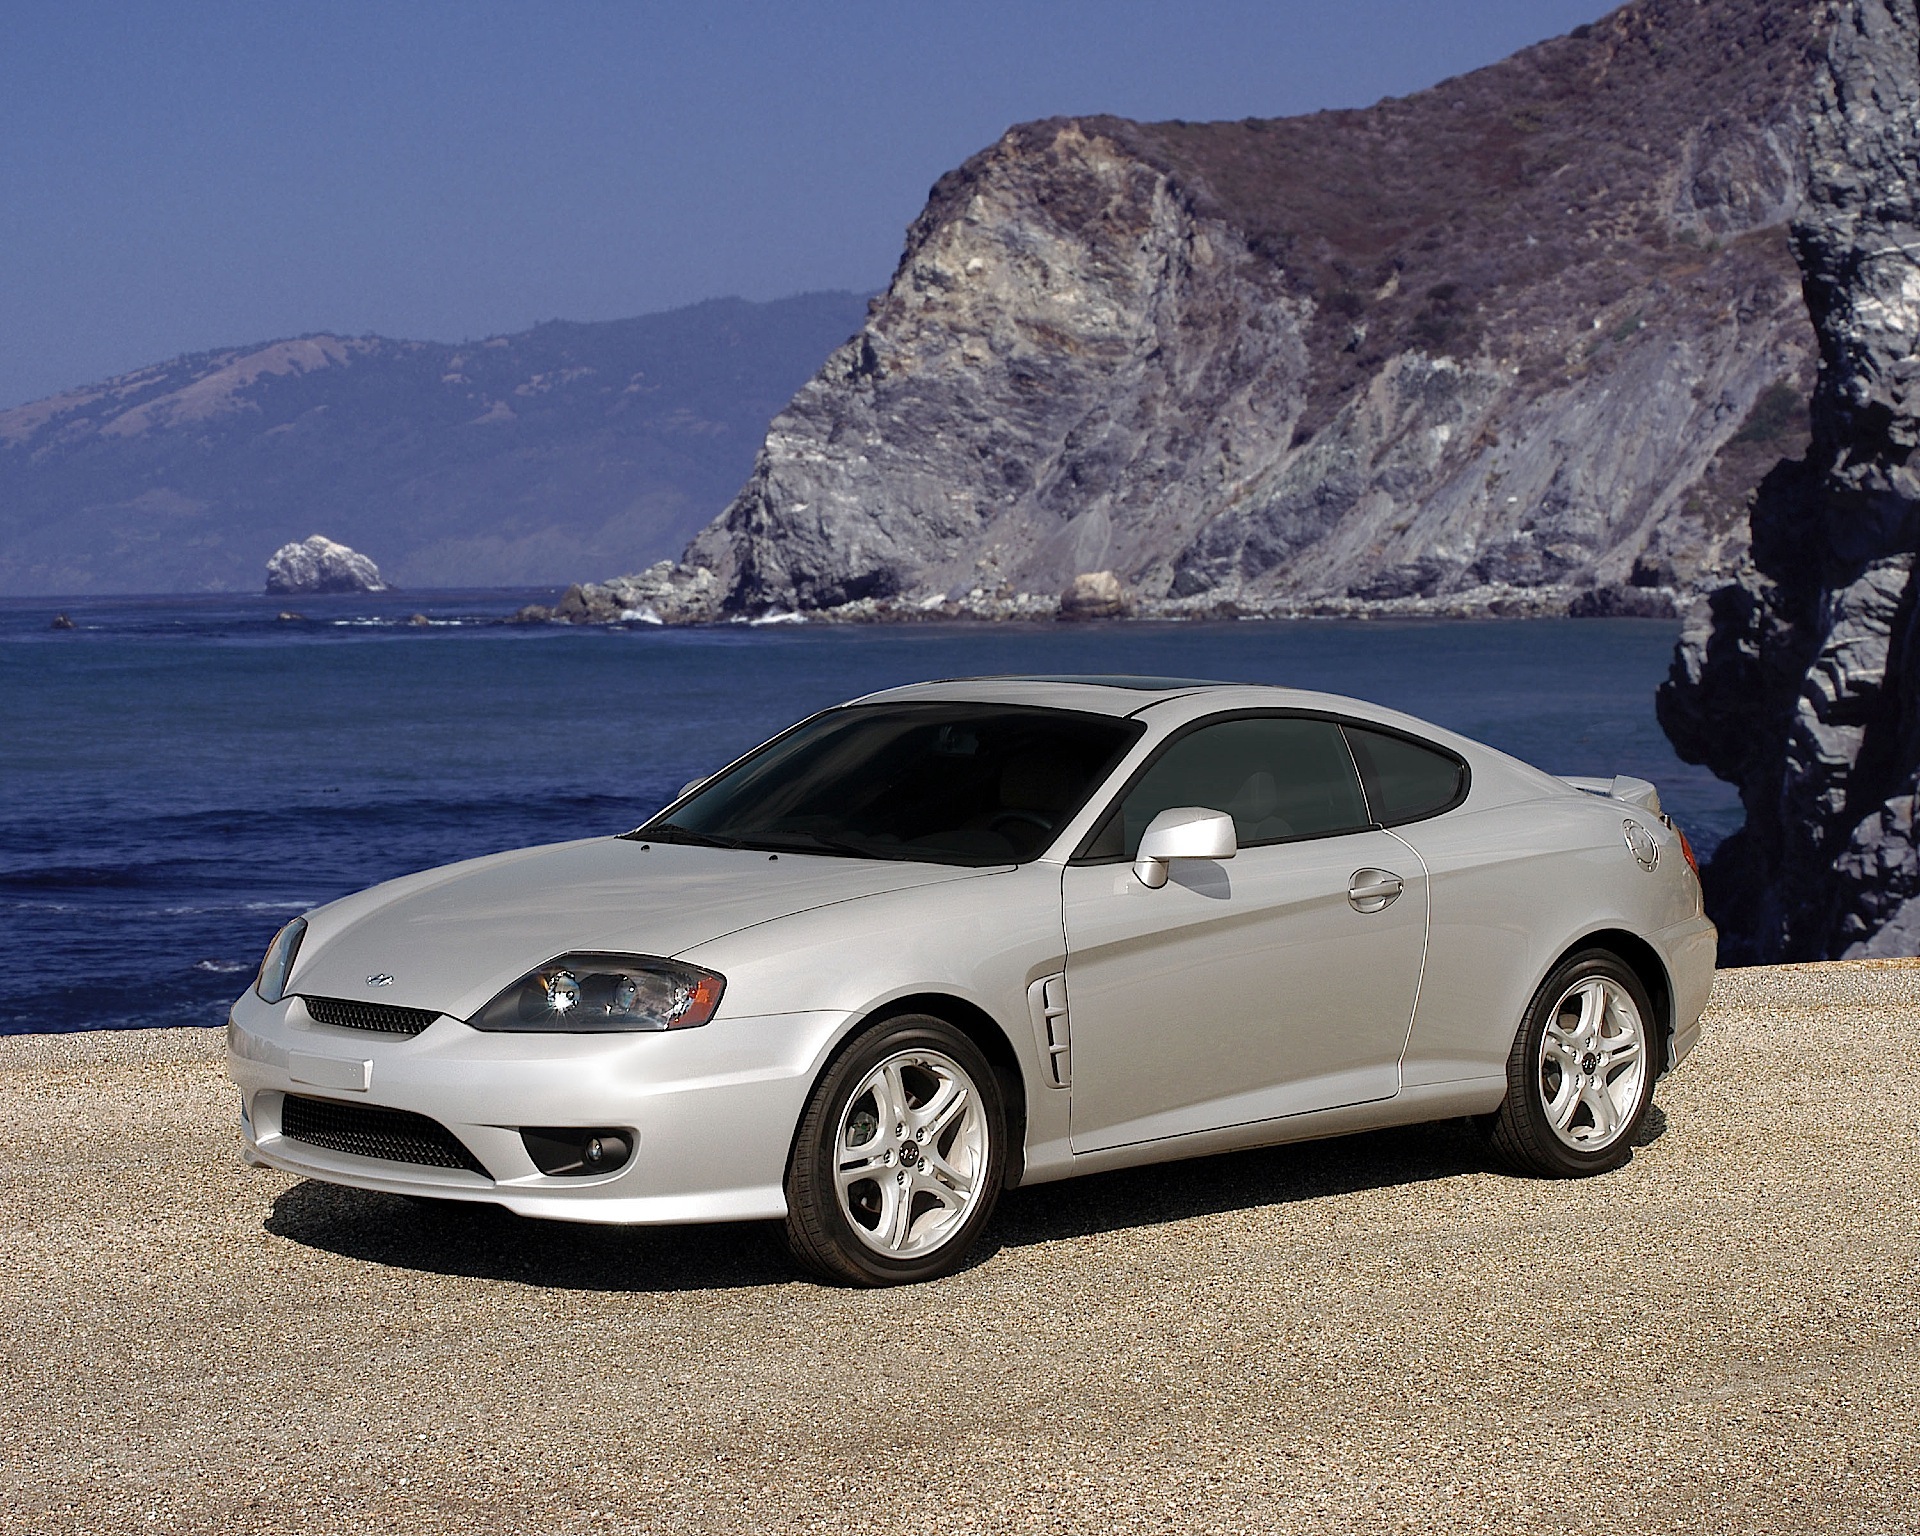 HYUNDAI Coupe / Tiburon - 2004, 2005, 2006, 2007 - autoevolution